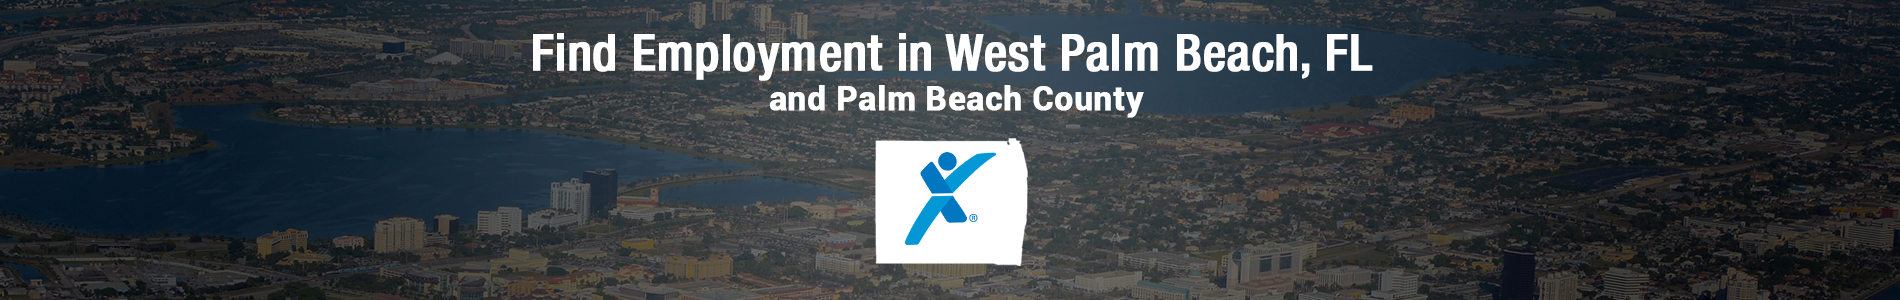 Find employment in West Palm Beach, FL